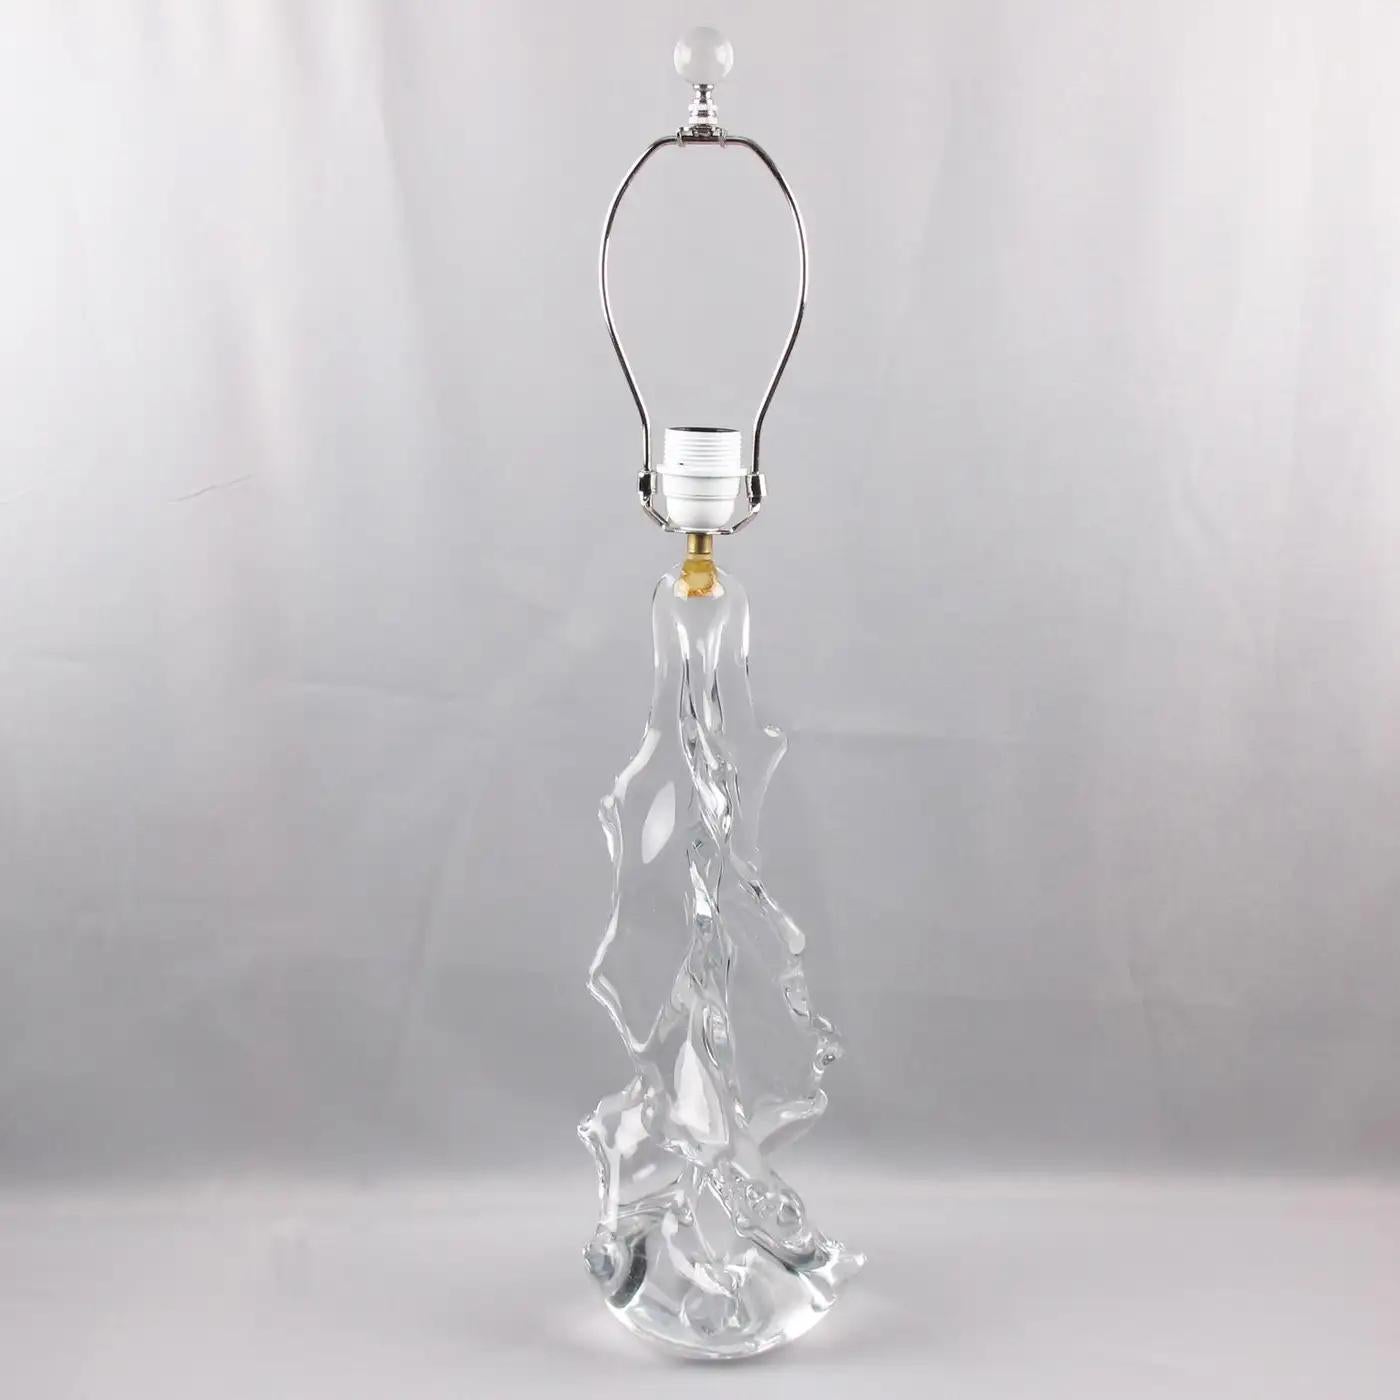 Charles Schneider France a conçu cette lampe de table ou de bureau en verre d'art. Le cristal clair soufflé à la bouche présente un motif abstrait représentant un sapin de Noël géant dans une forme incurvée et tourbillonnante. Le câblage a été